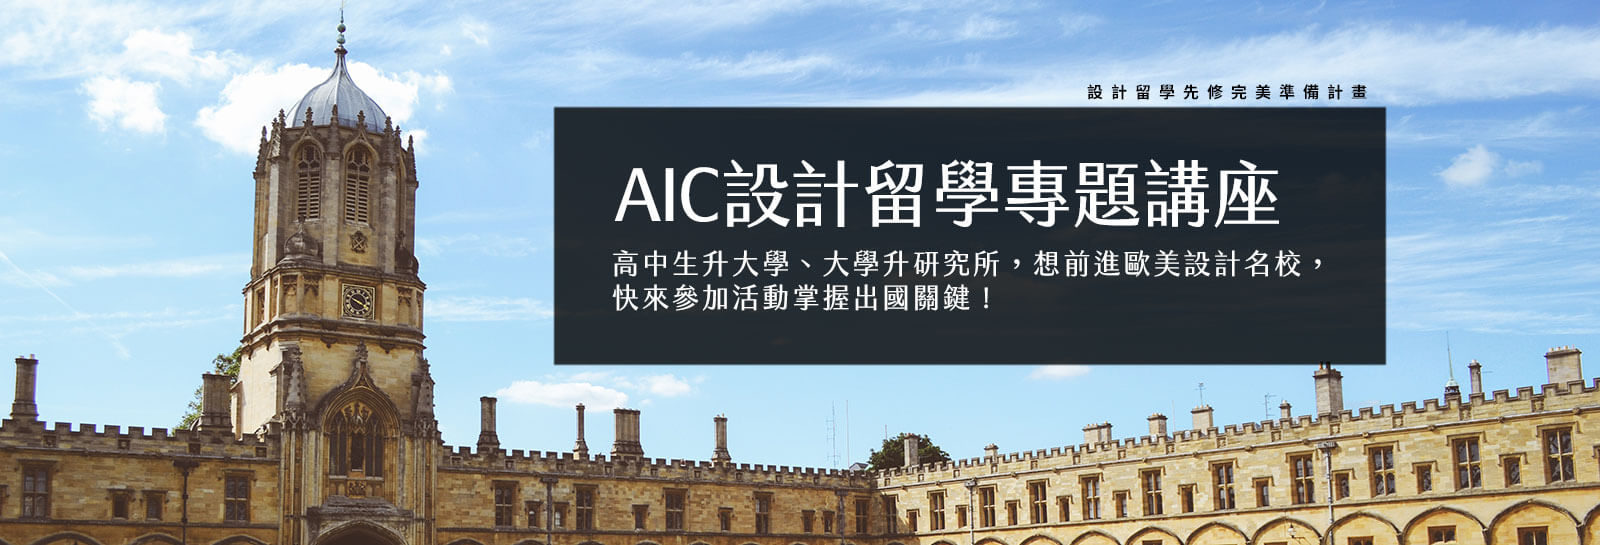 AIC設計留學先修文憑課程